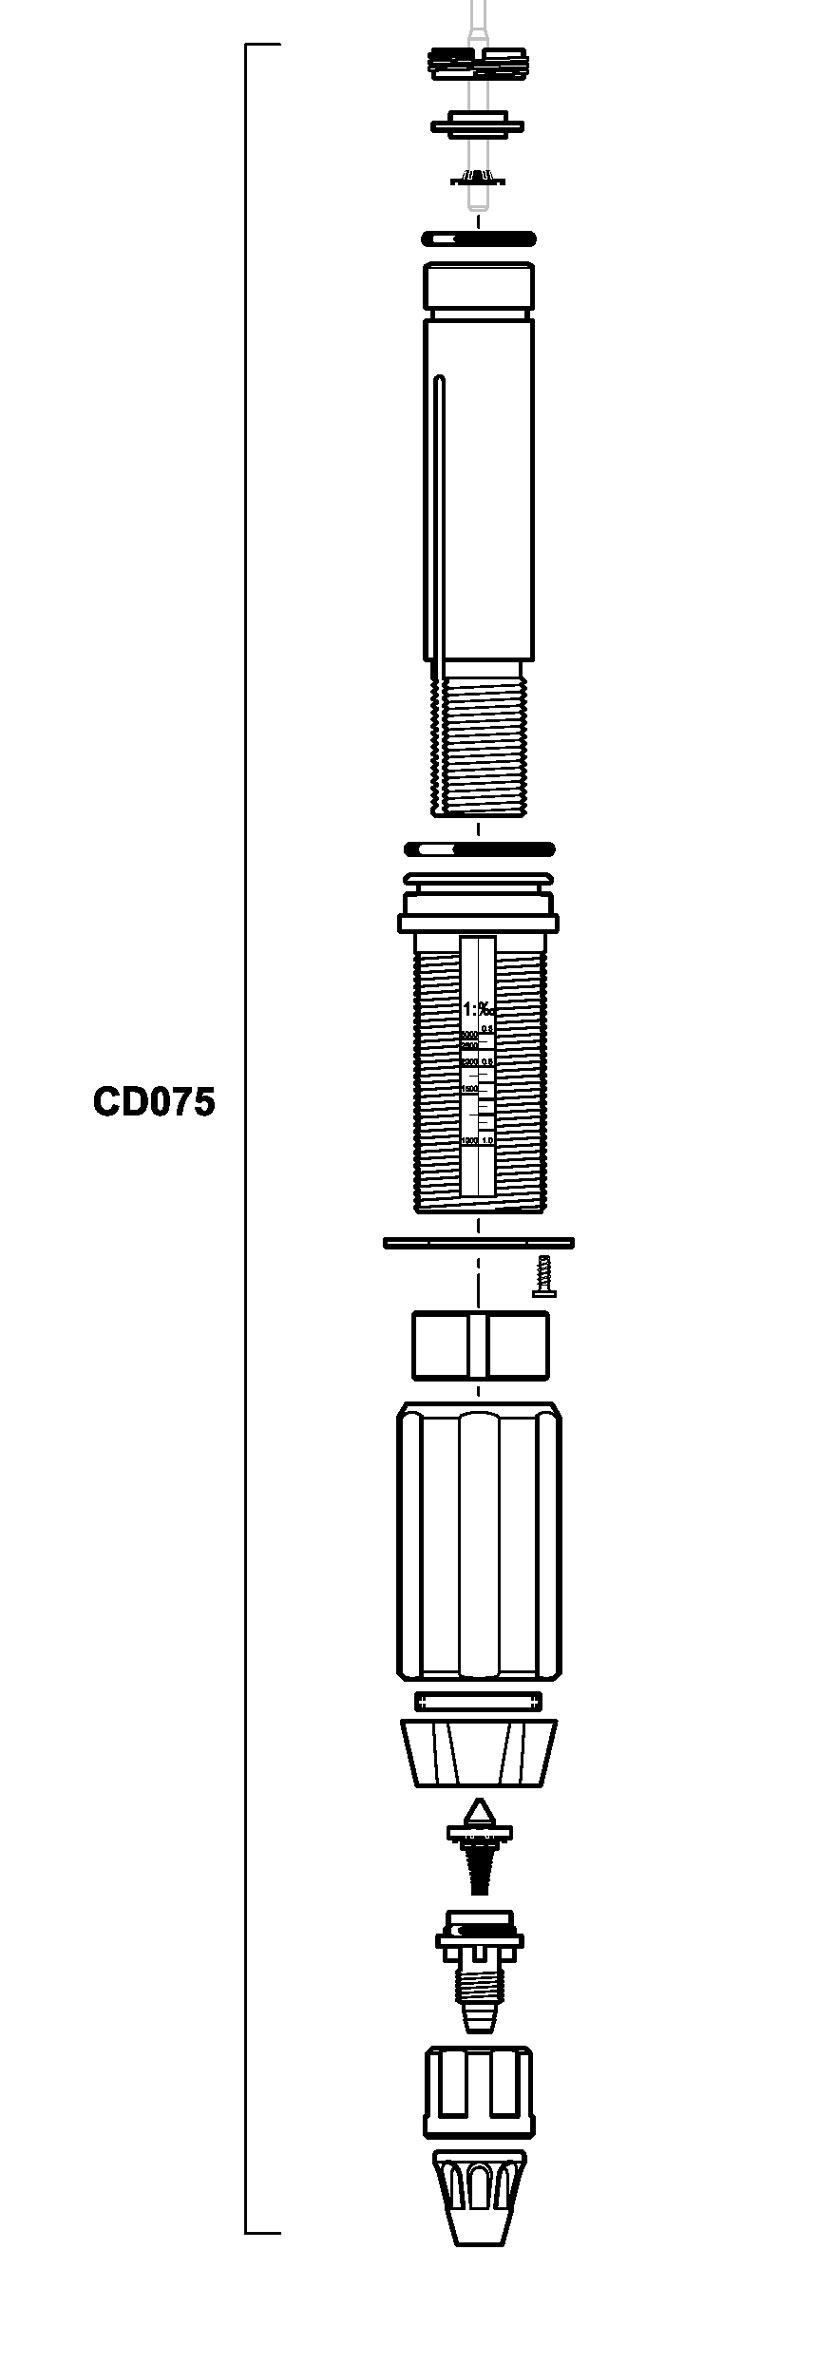 CD075VF - Bausatz Dosierpartie D45RE3000